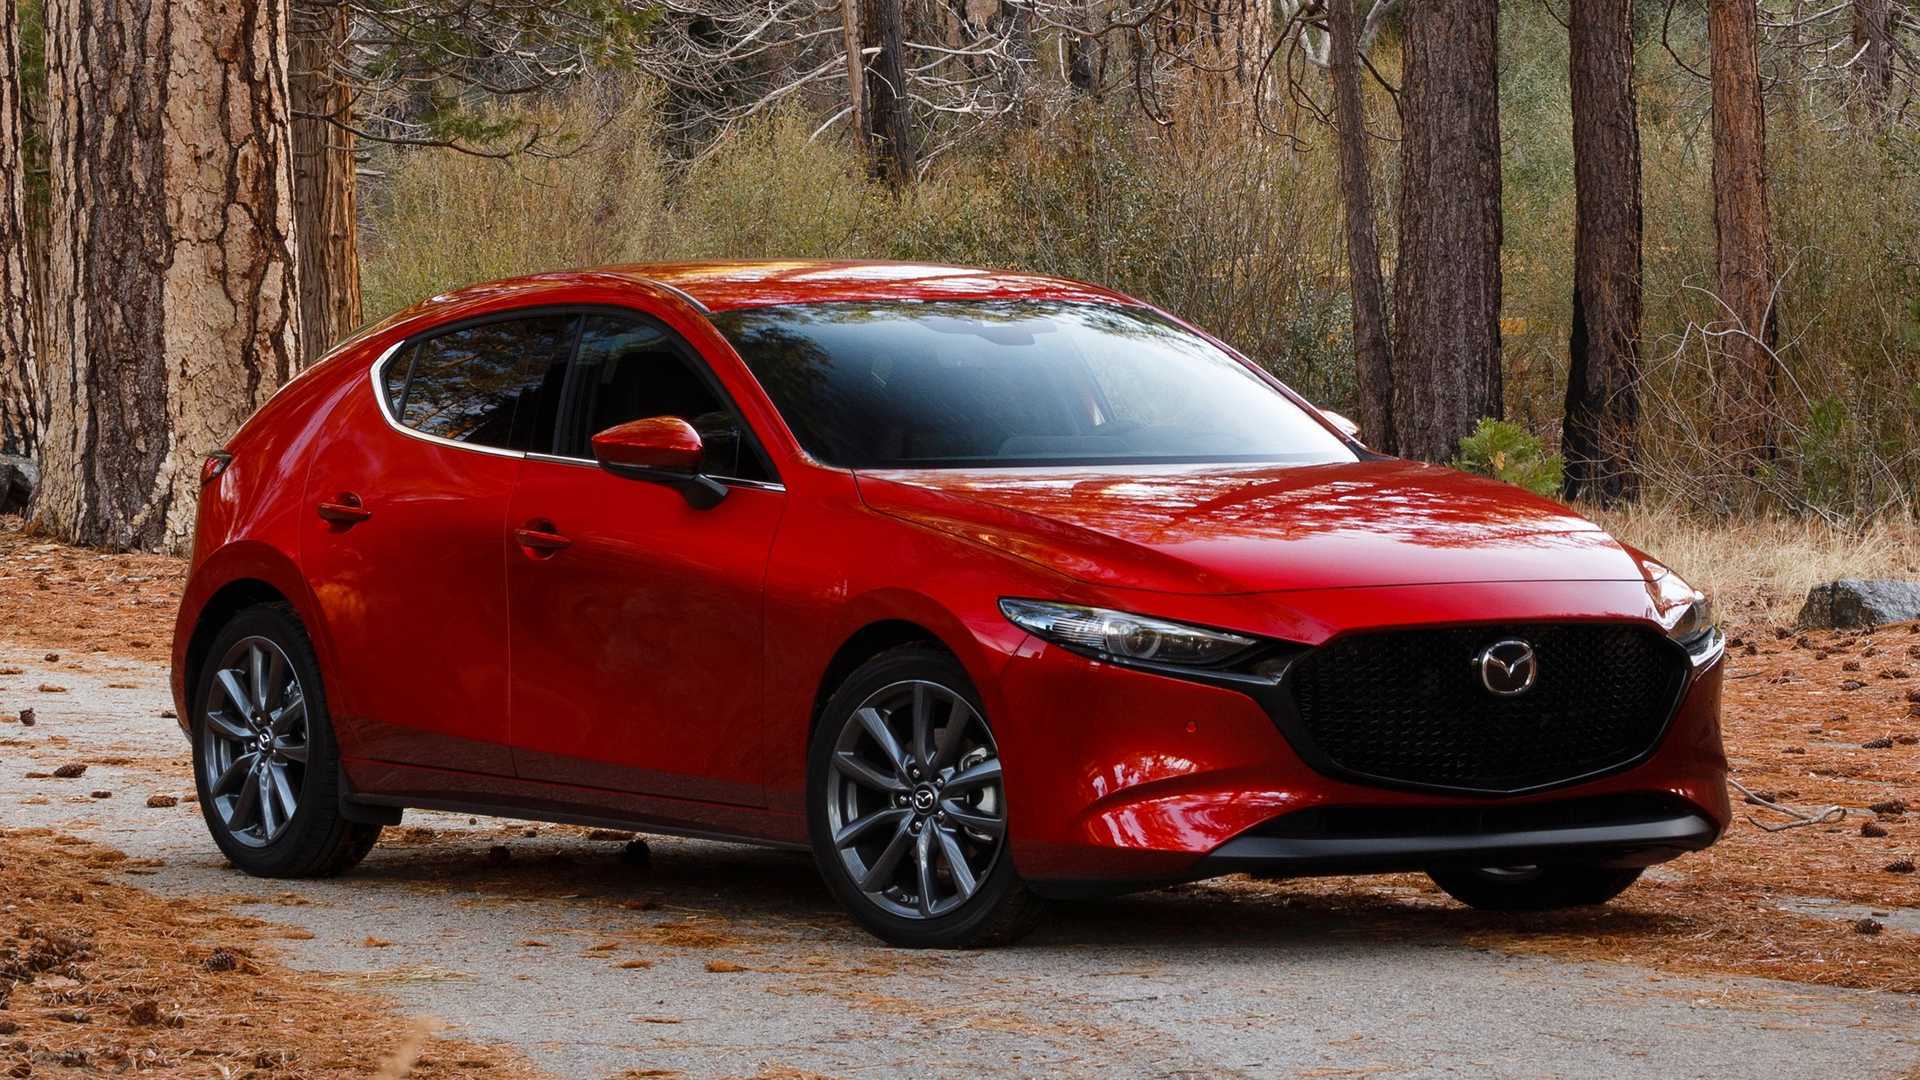 Mazda Mazda3 News and Reviews | Motor1.com